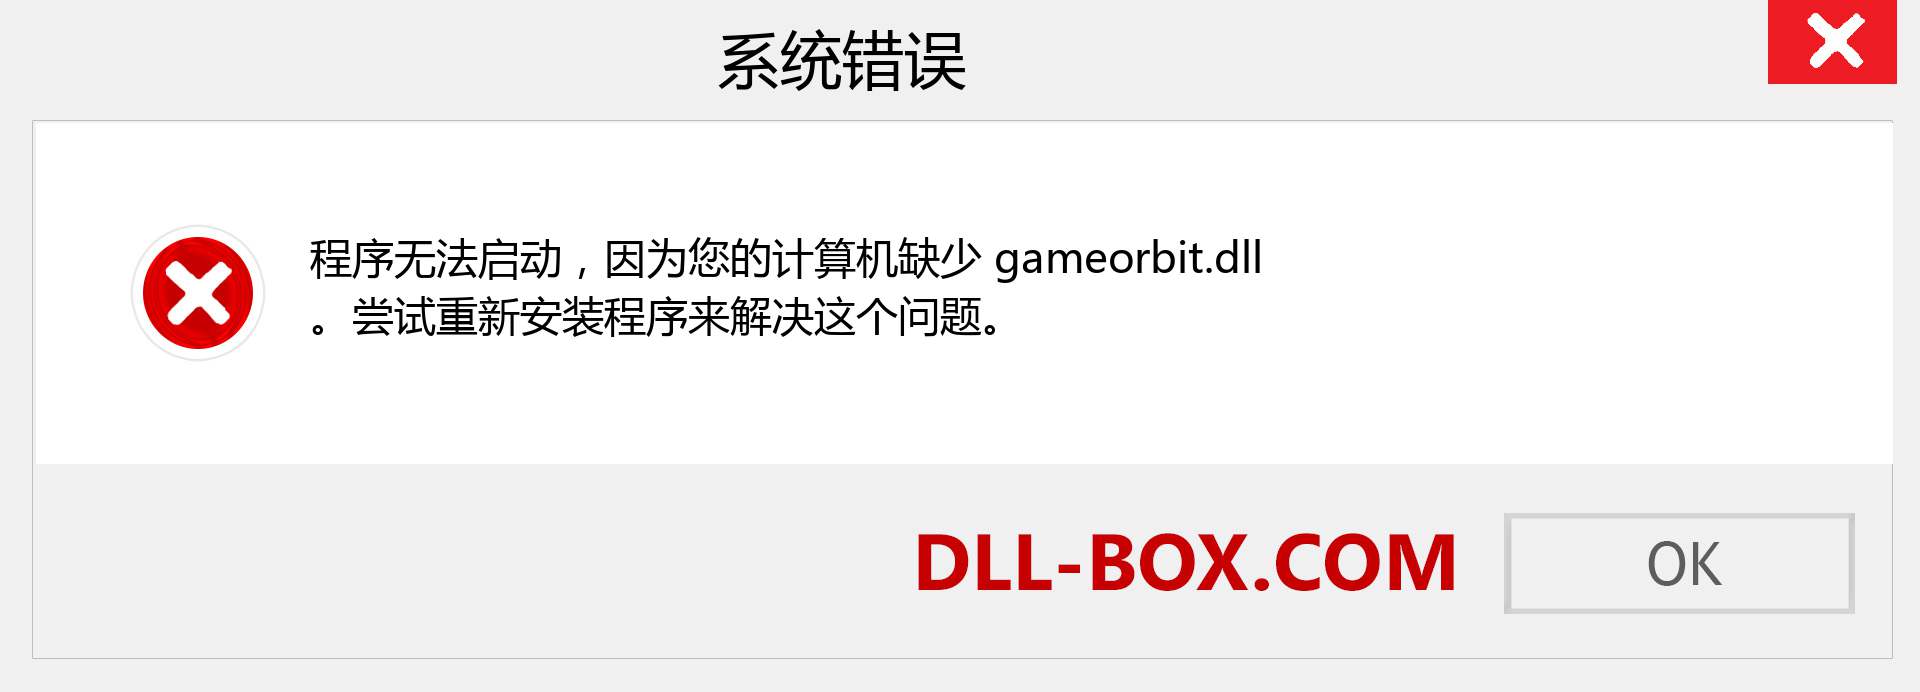 gameorbit.dll 文件丢失？。 适用于 Windows 7、8、10 的下载 - 修复 Windows、照片、图像上的 gameorbit dll 丢失错误